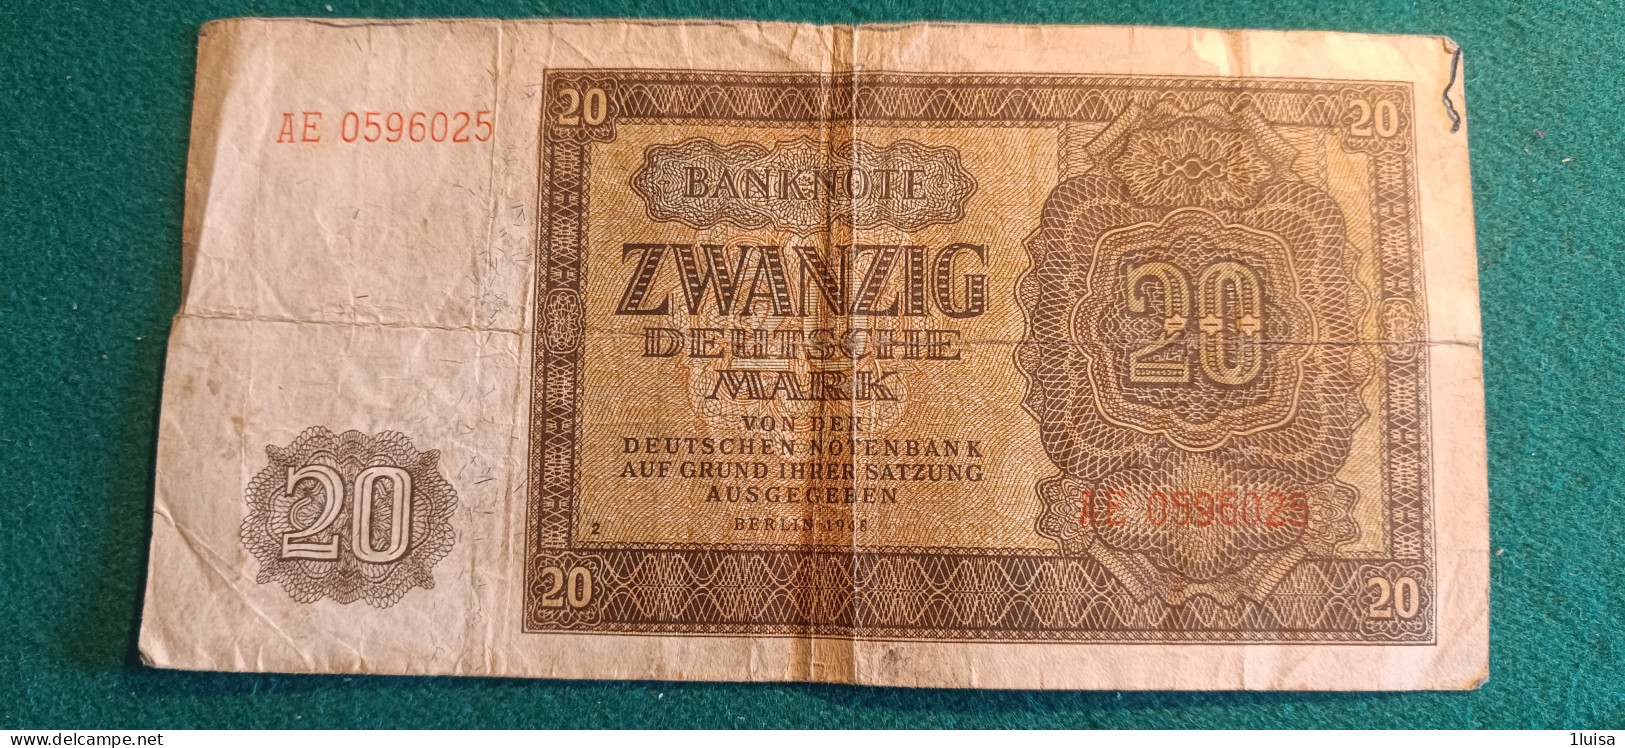 GERMANIA 20 MARK 1948 - 20 Deutsche Mark